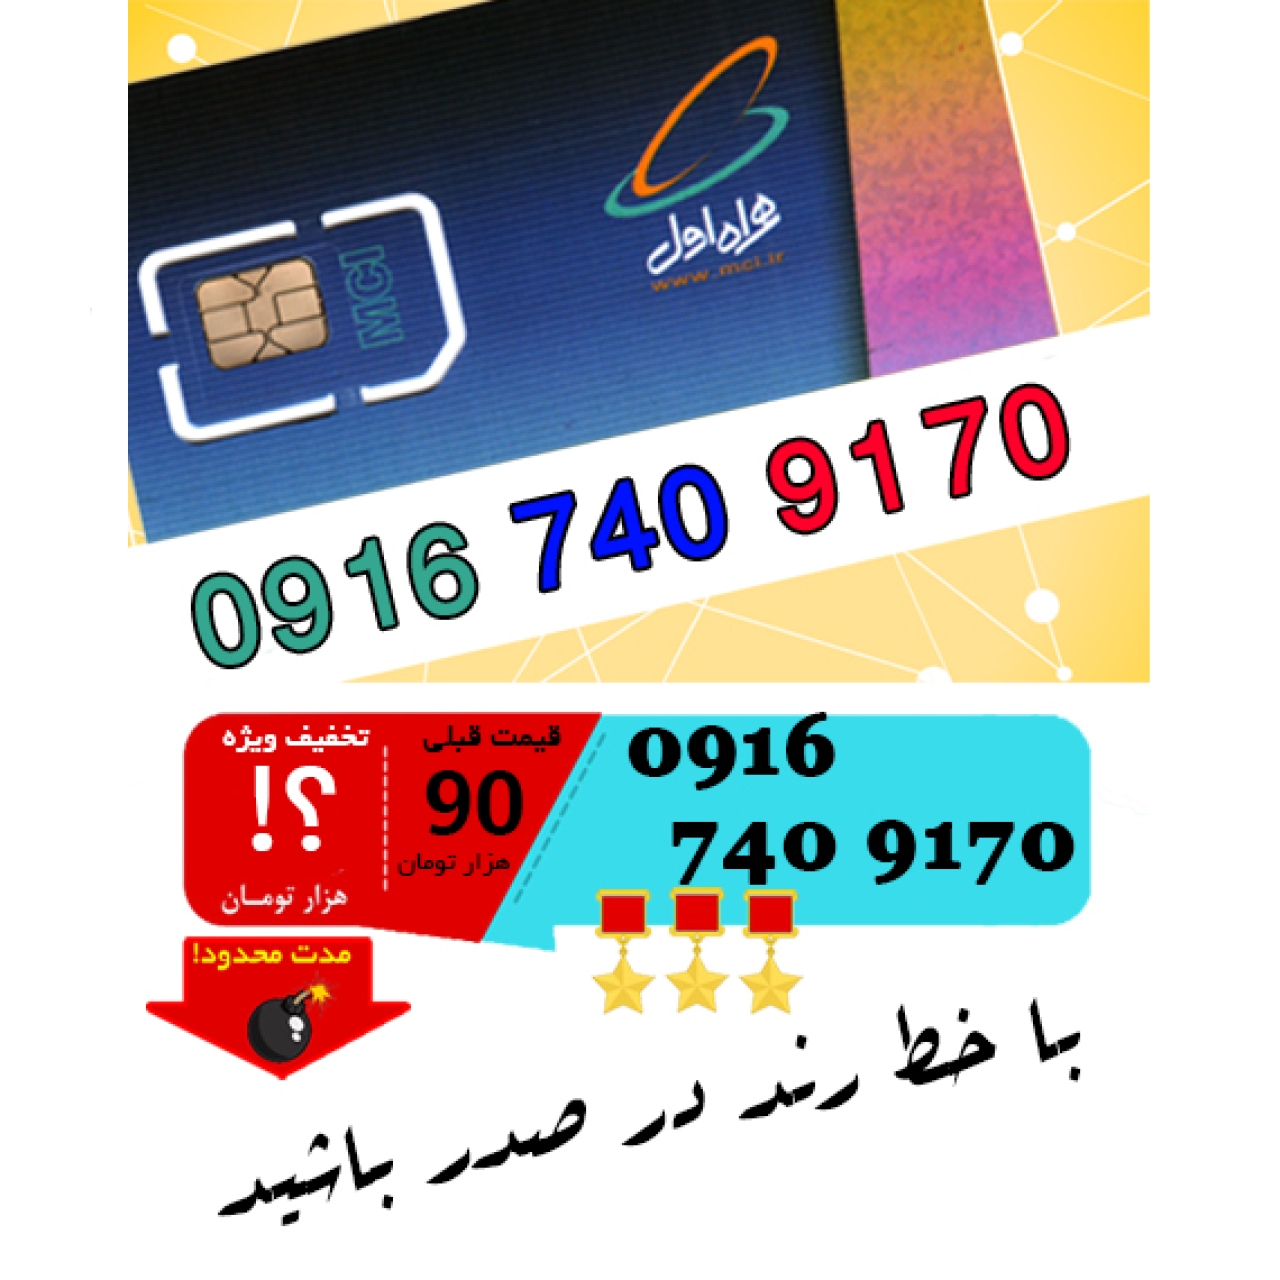 سیم کارت اعتباری رند همراه اول 09167409170